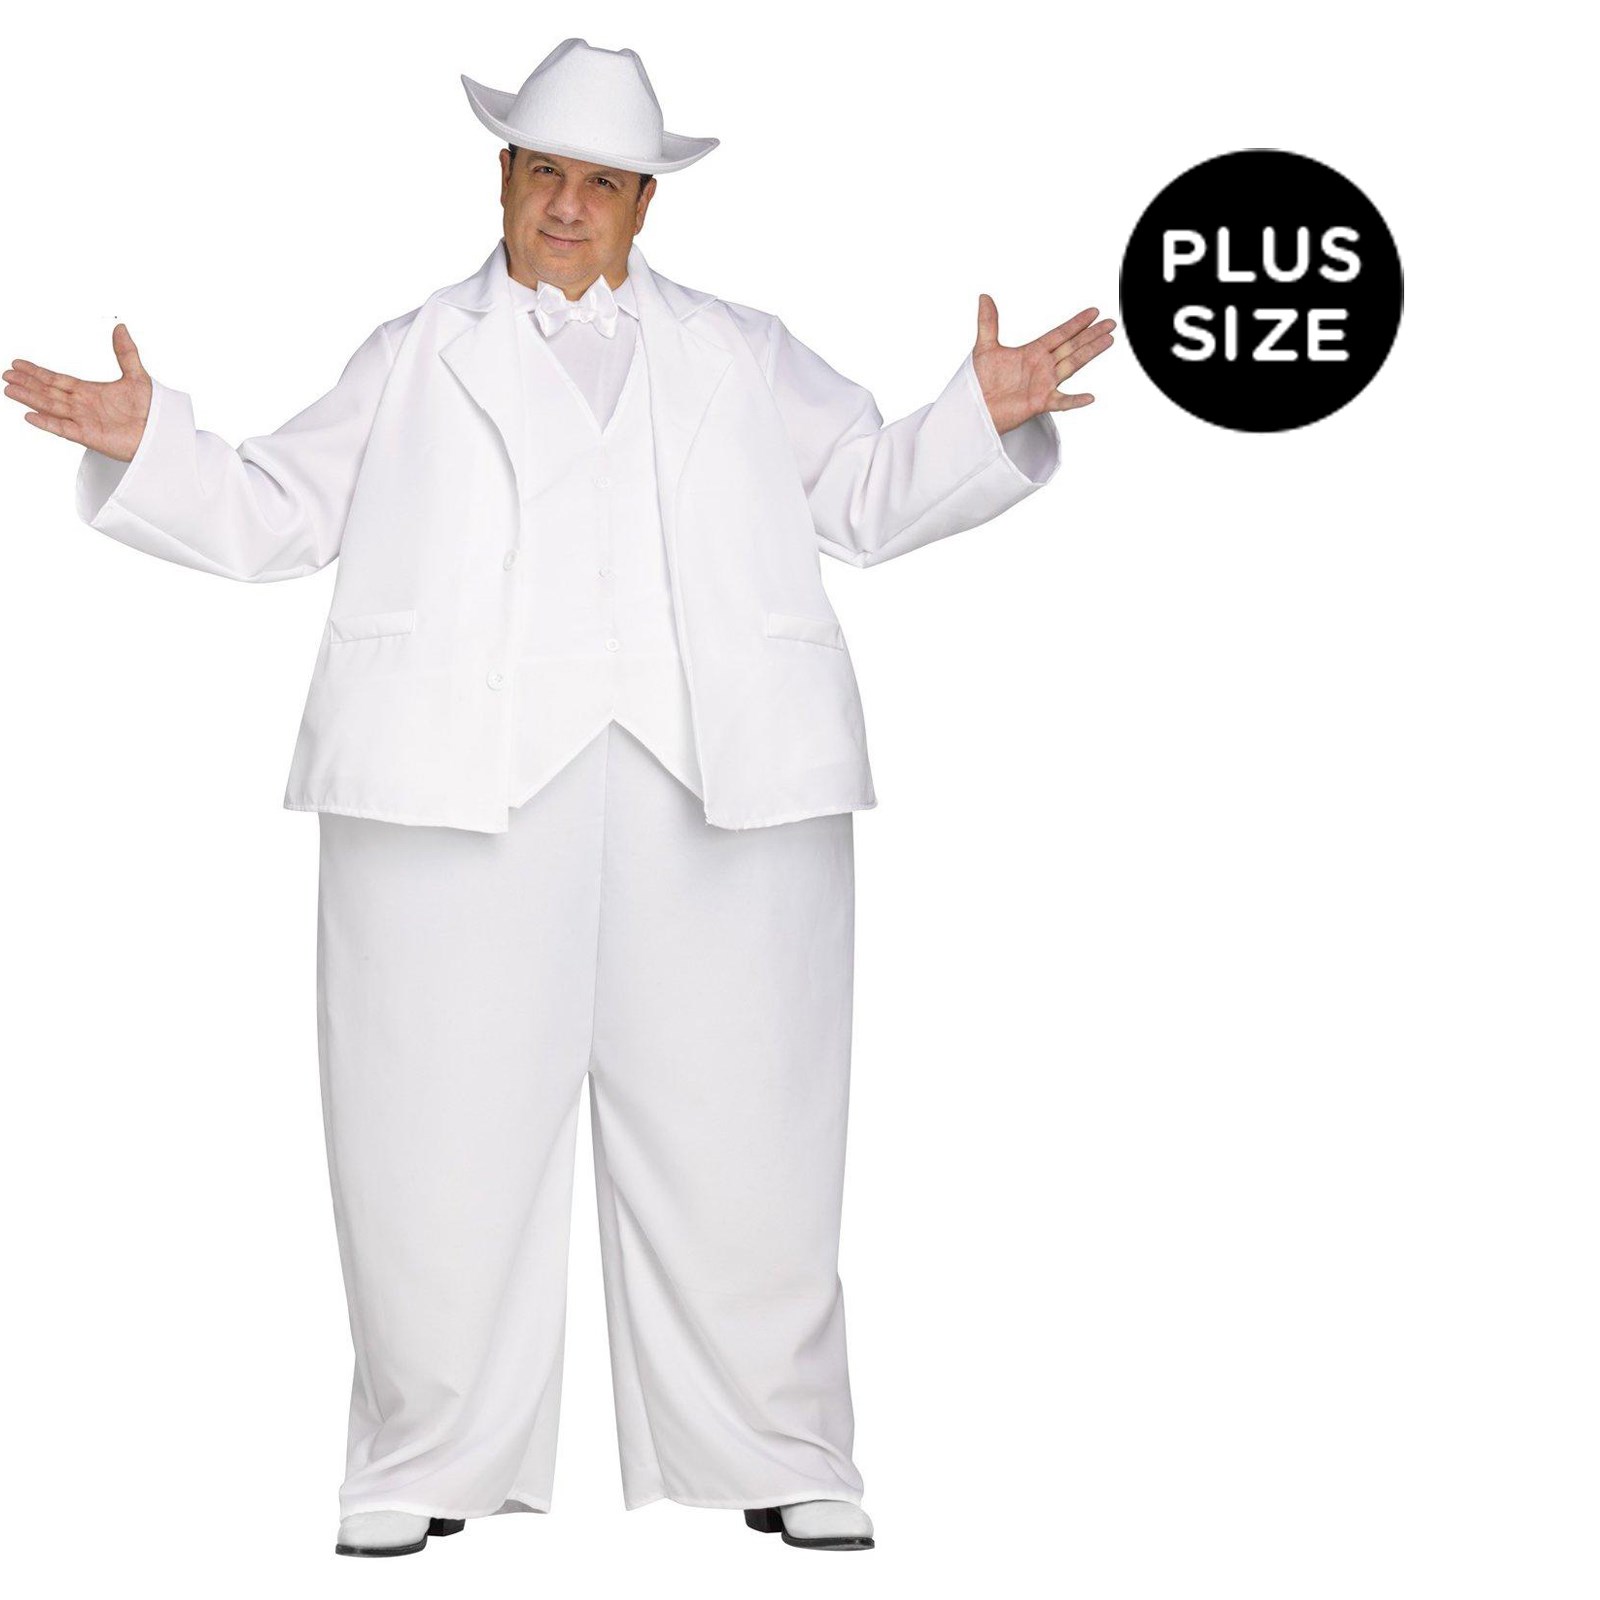 The Dukes of Hazzard Boss Hogg Plus Size Costume For Men